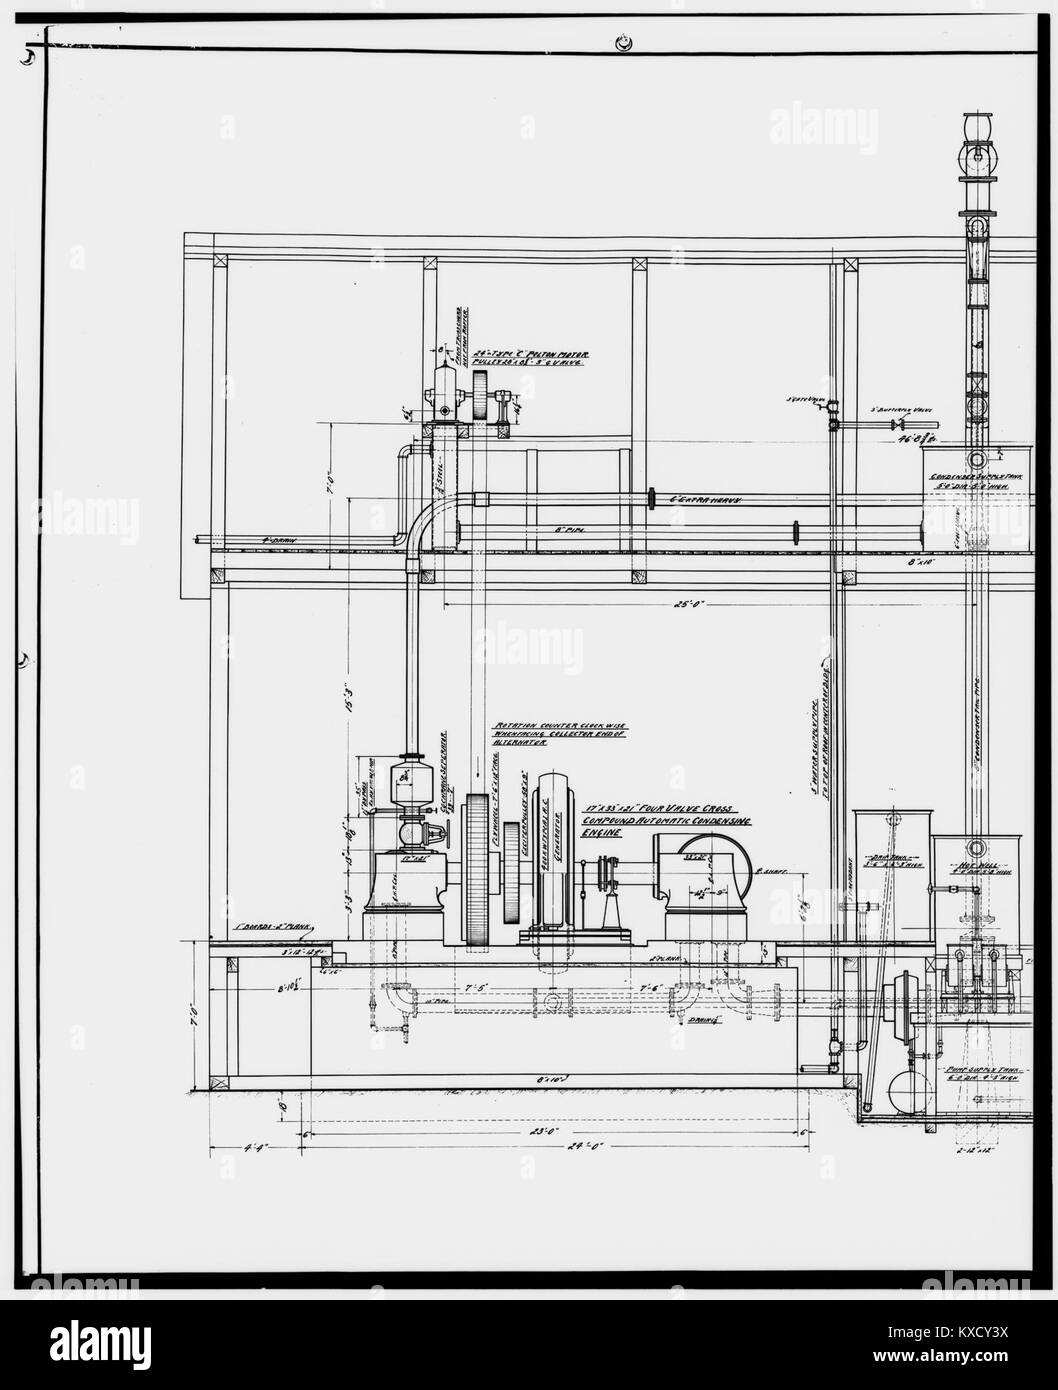 33. Kopie der Zeichnung von Kraftwerk, Abschnitt, OCT. 13, 1911 - Kennecott Copper Corporation, am Copper River^ Nord-LOC-hhh. ak 0003. Fotos. 001006 p Stockfoto